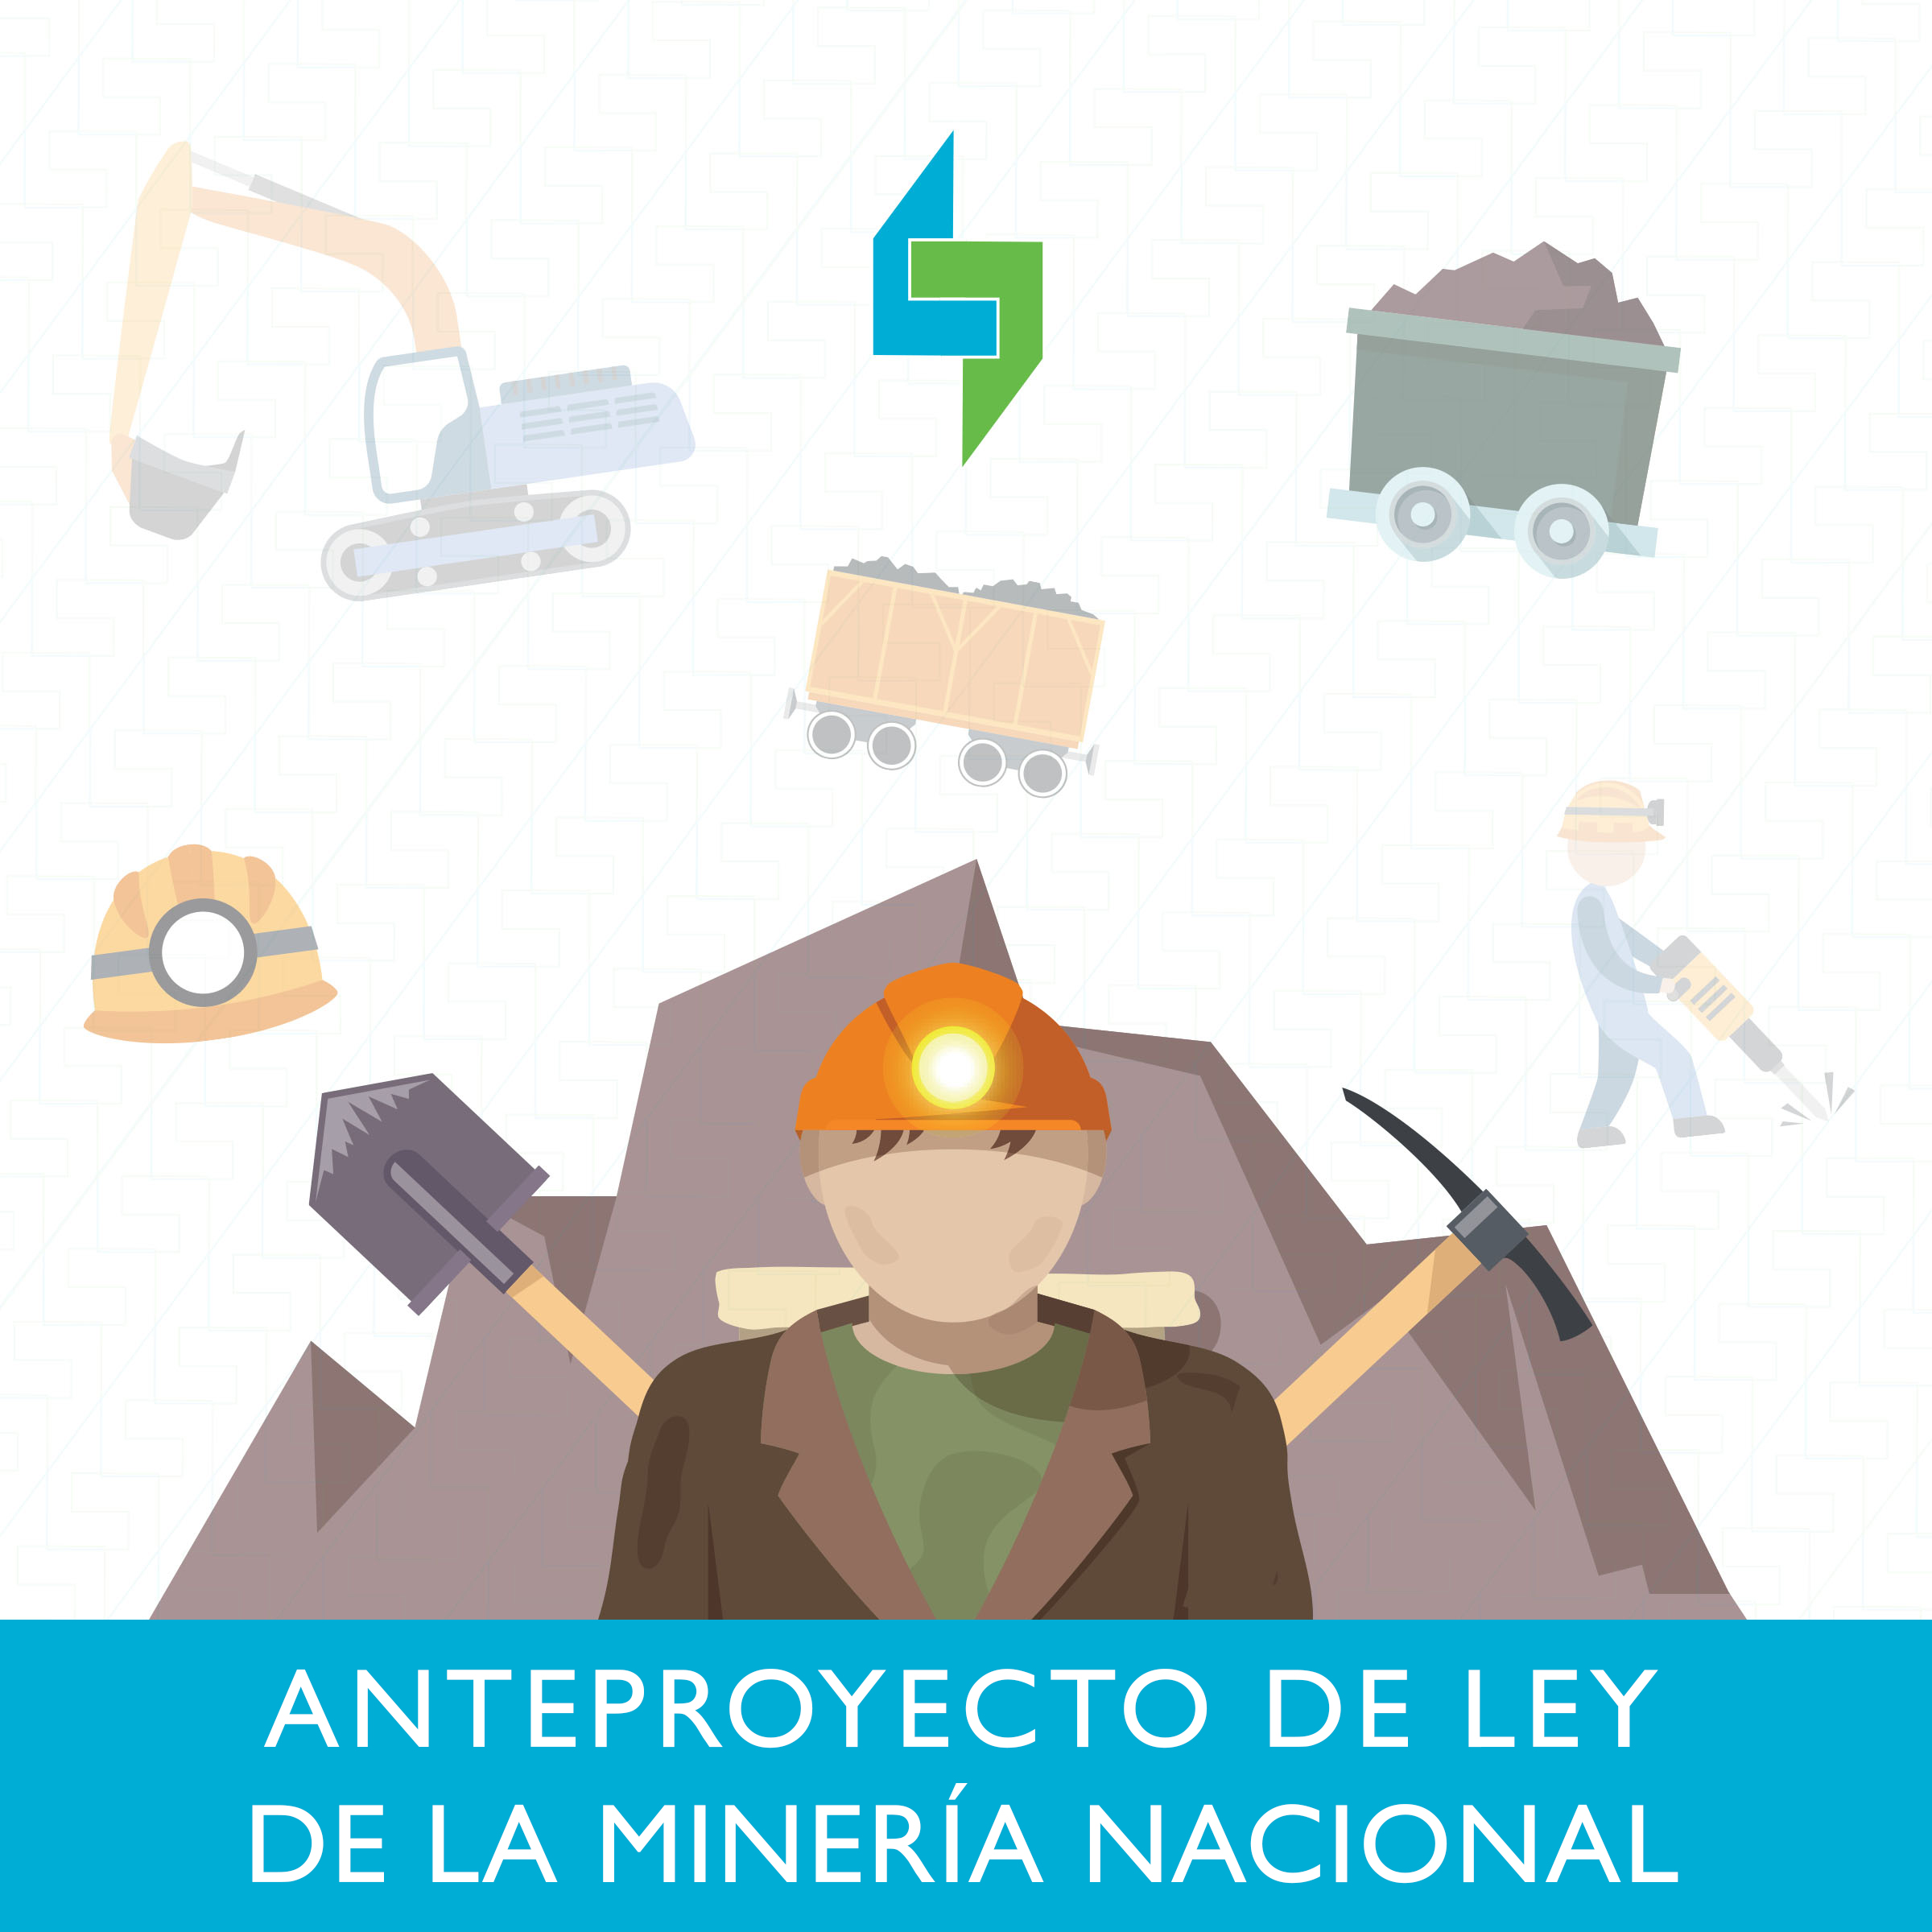 Anteproyecto de ley minera nacional